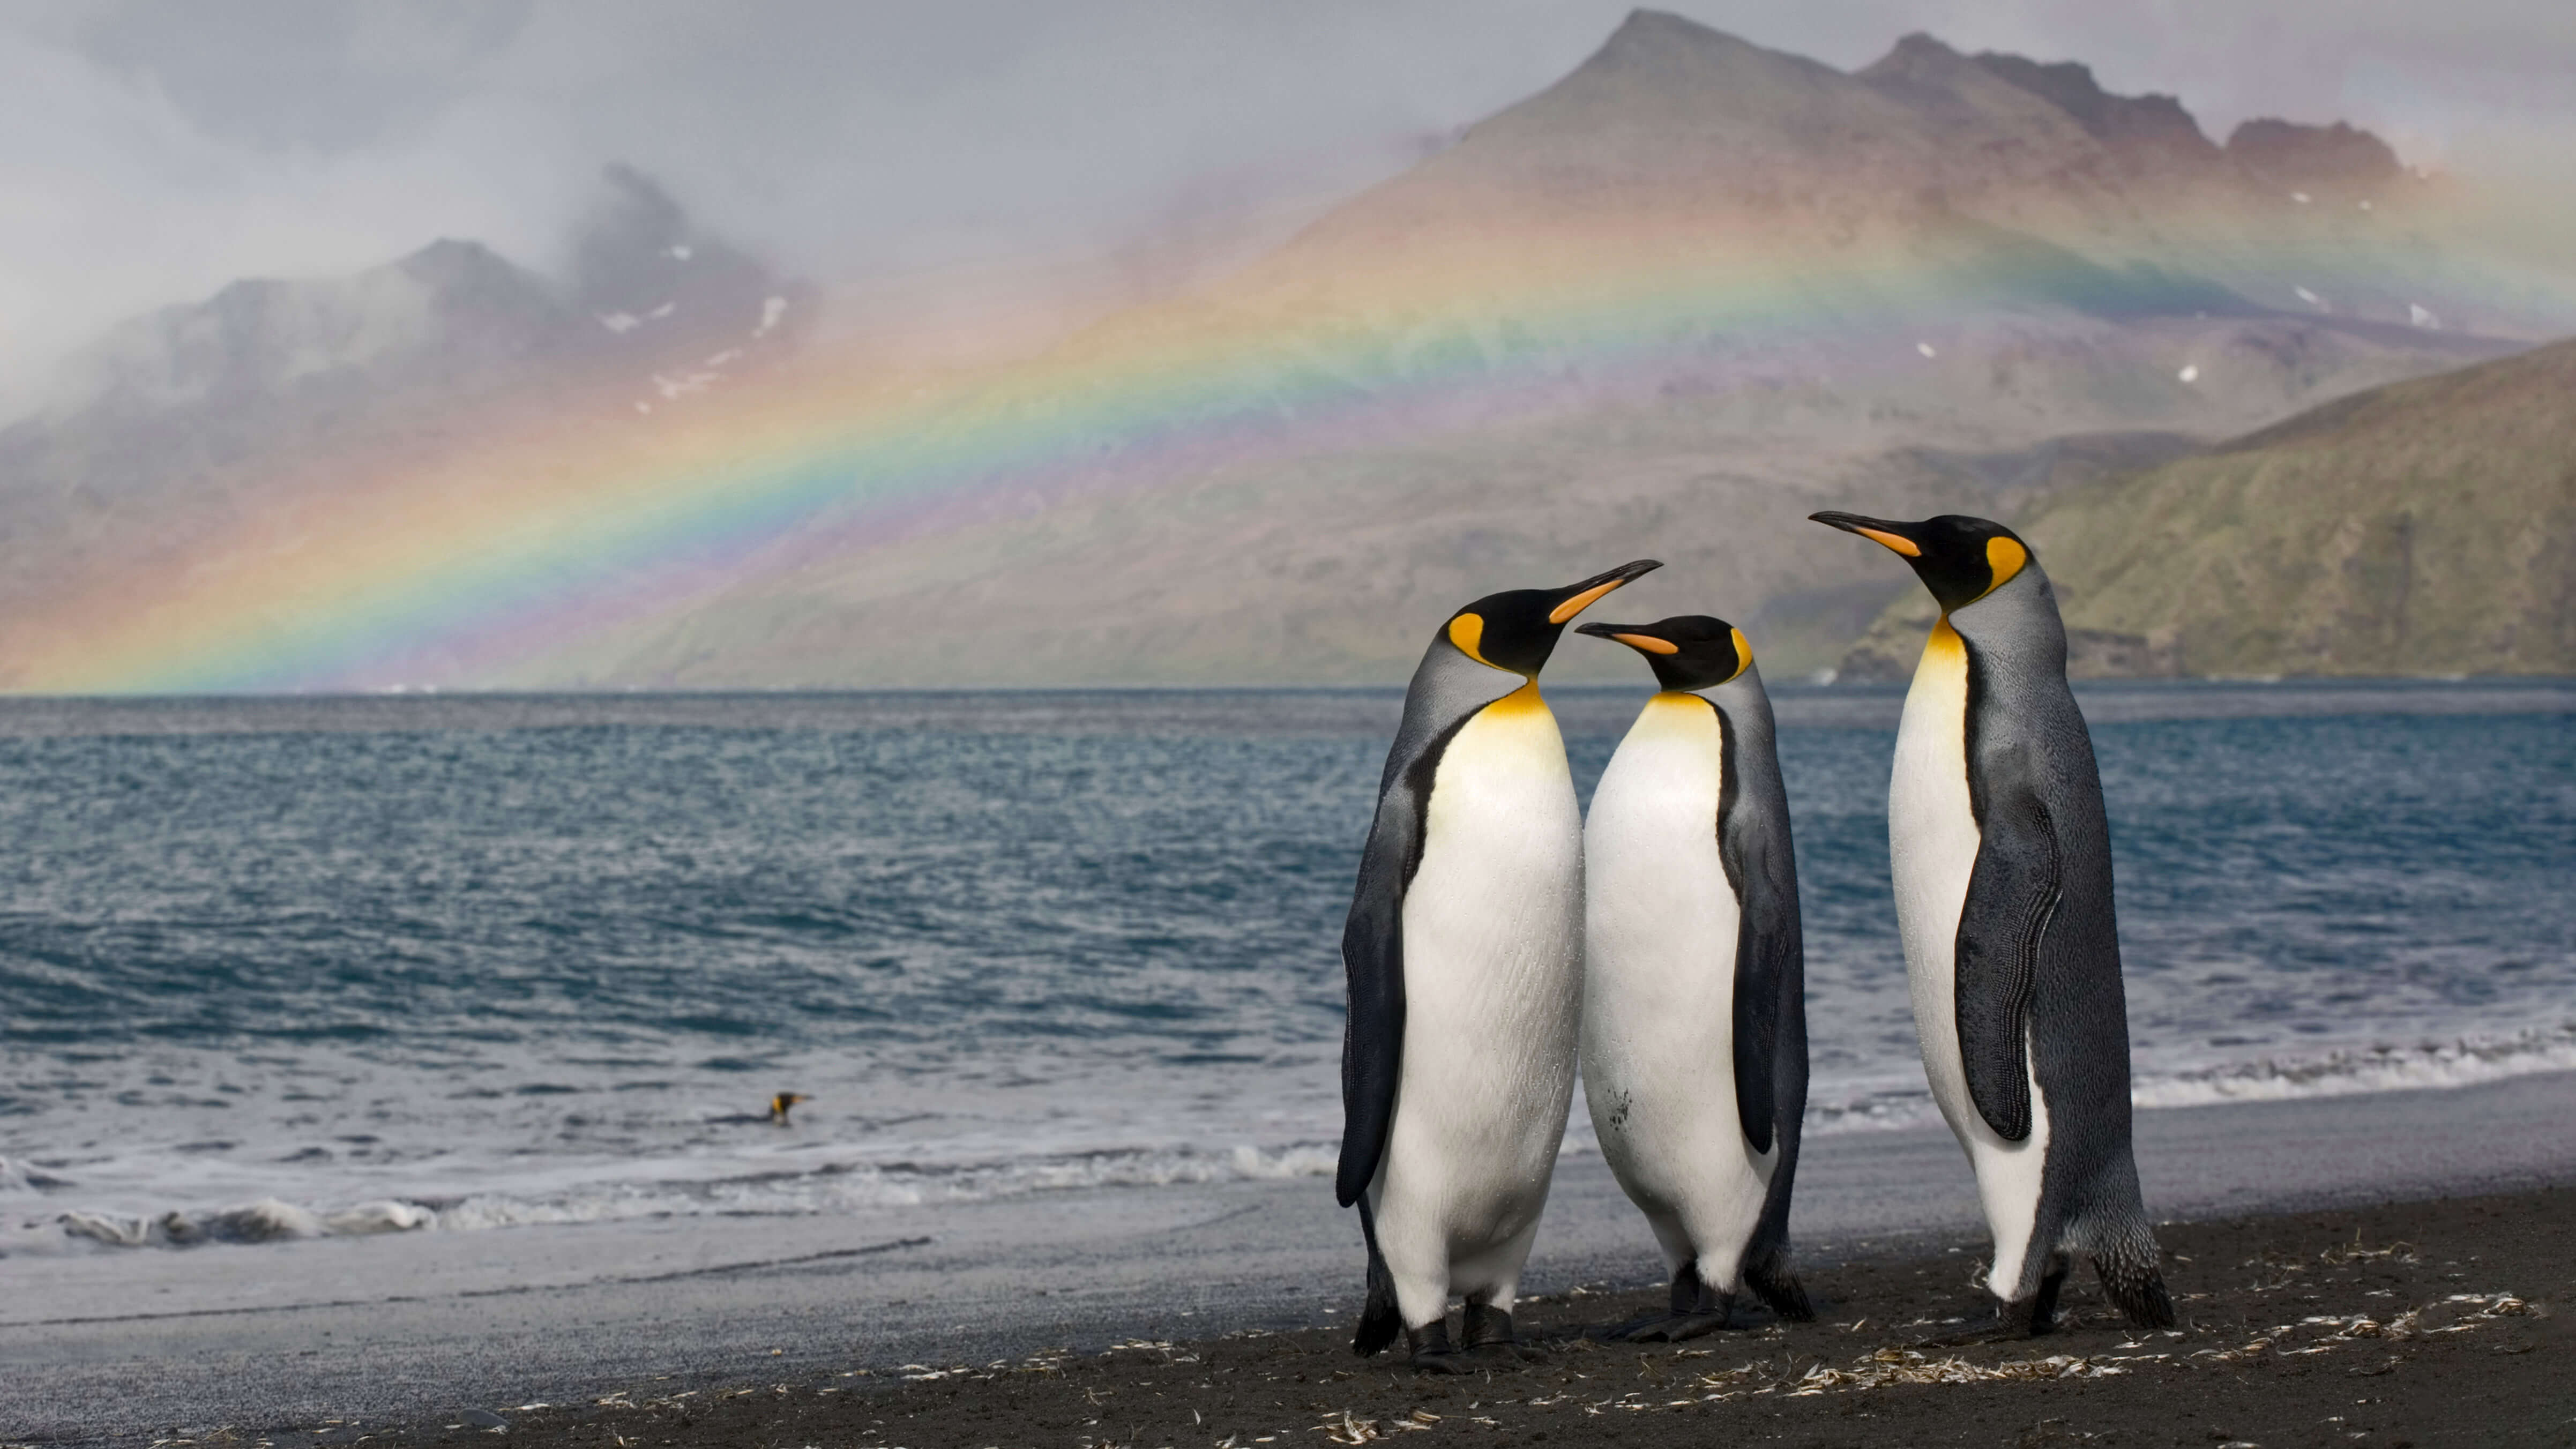 Fondos de pantalla Pingüinos con arcoiris de fondo